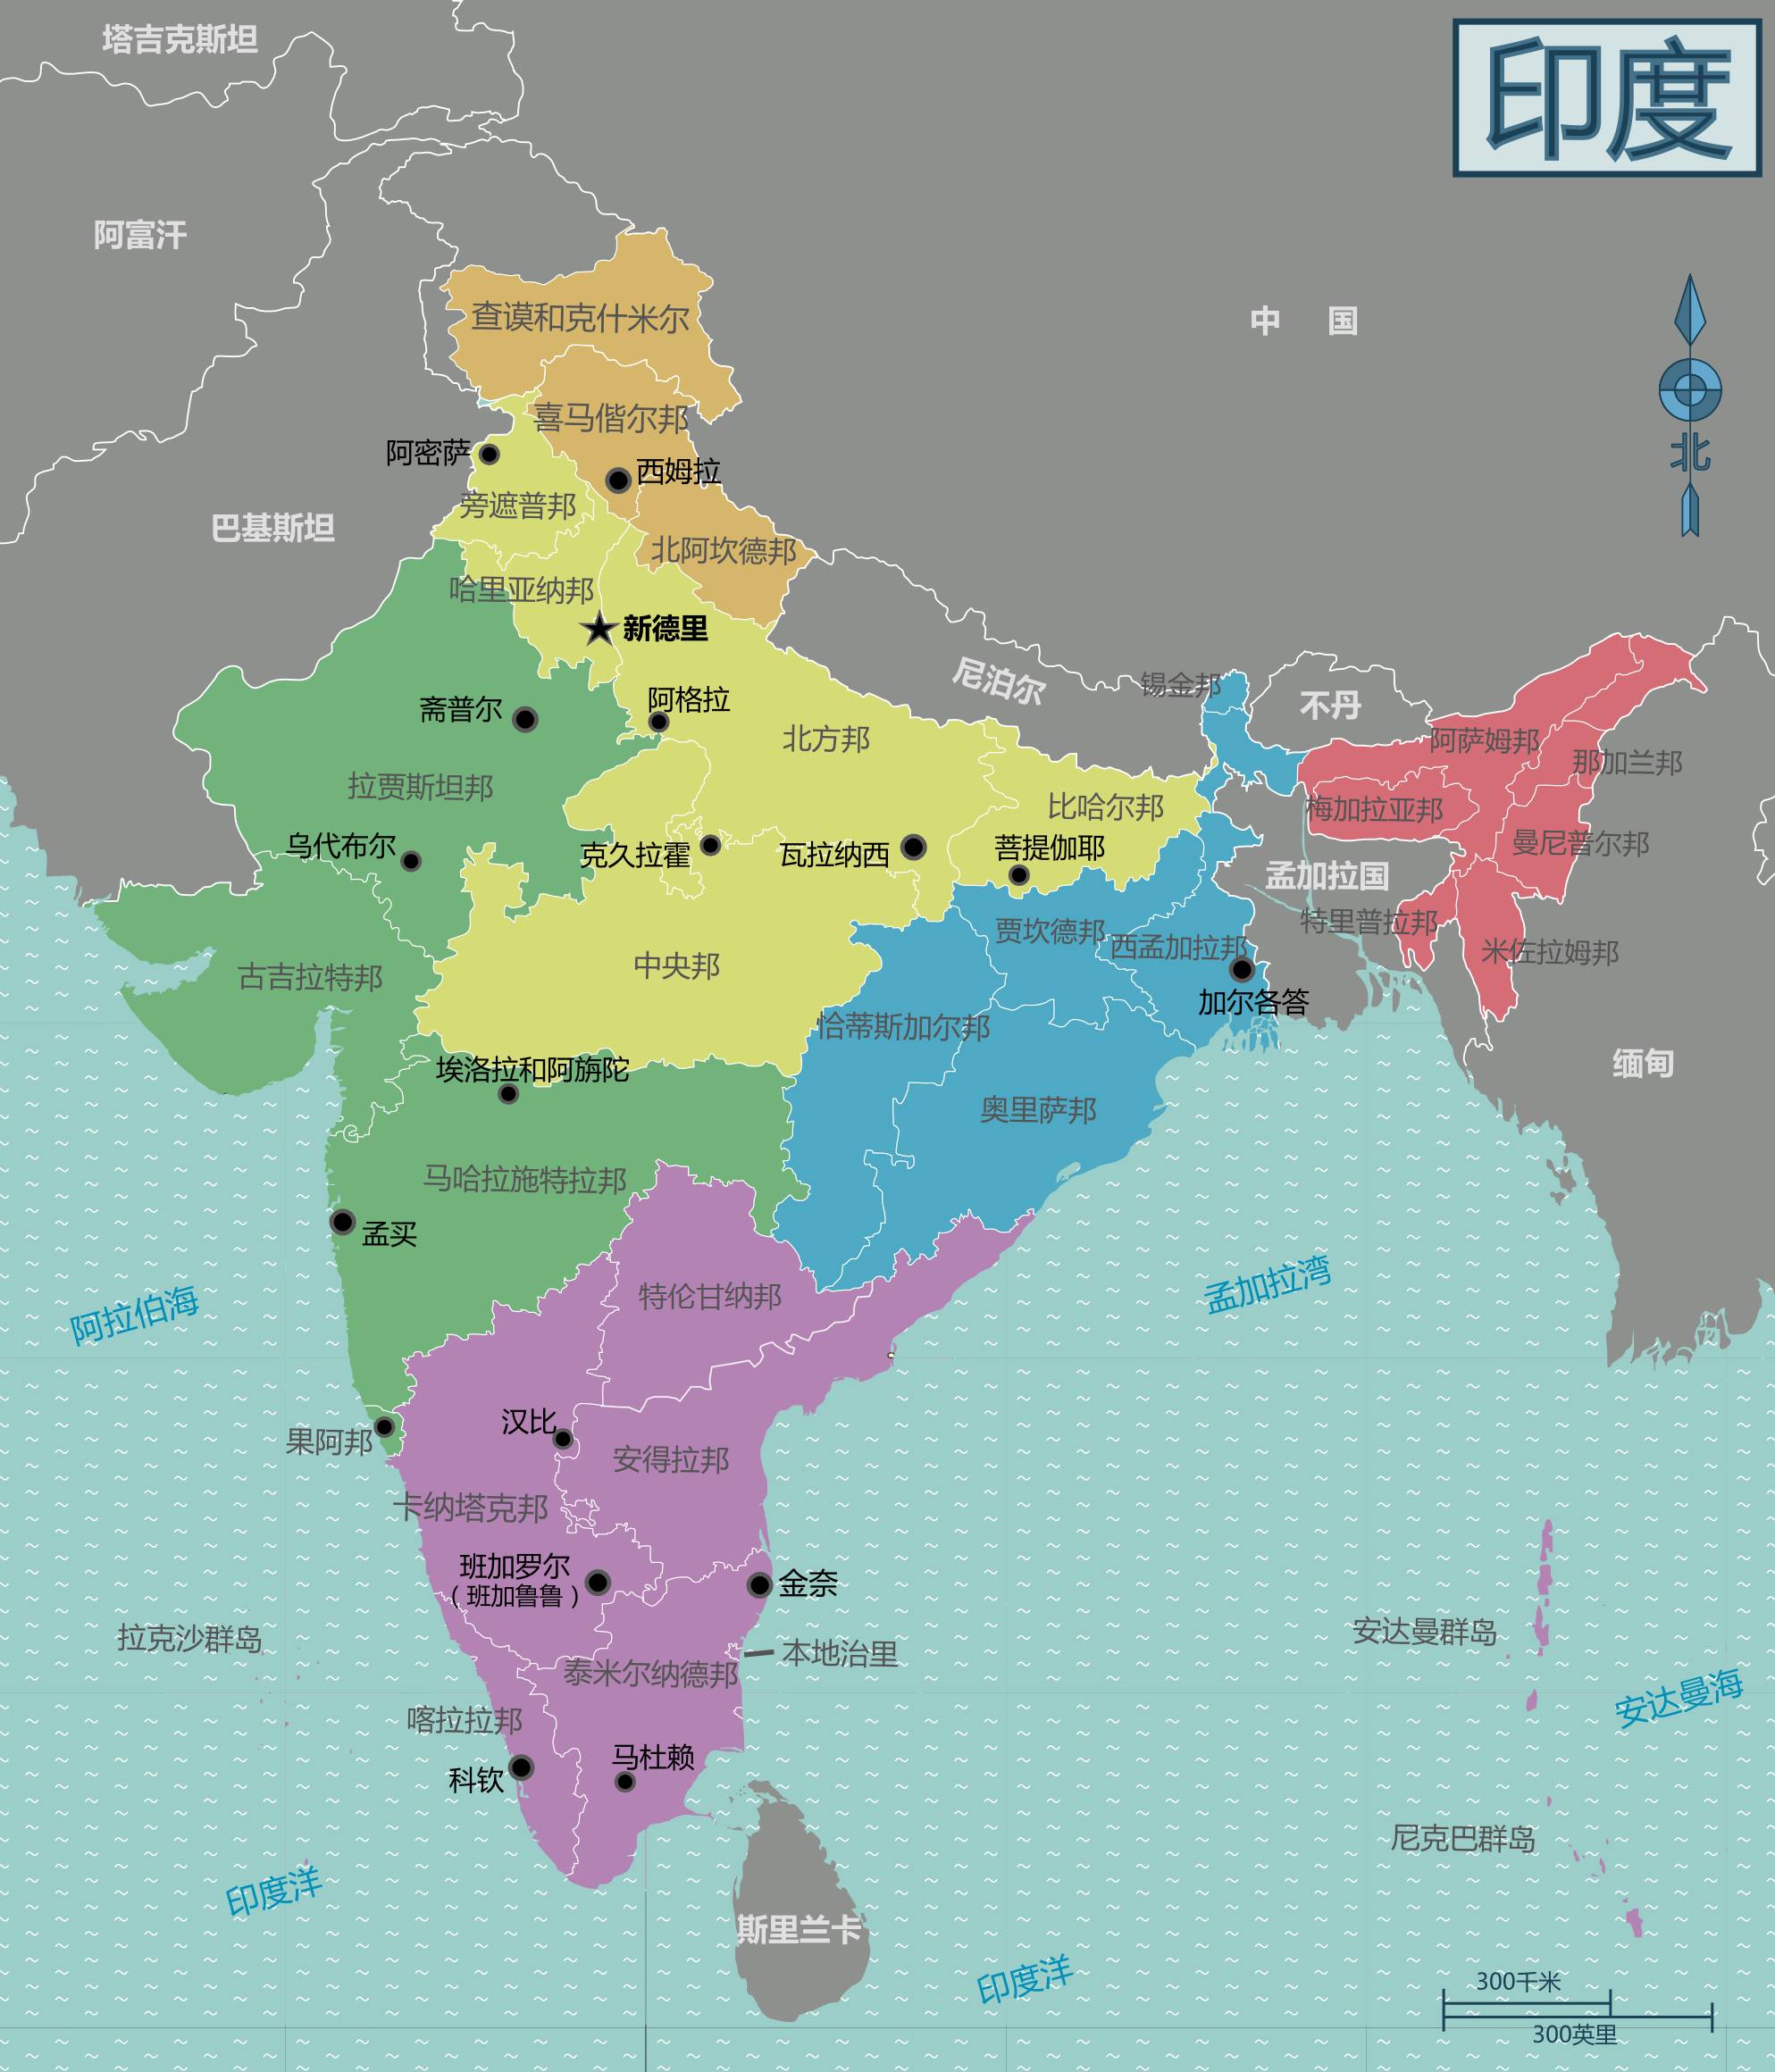 居然以殖民地的形式完成了印度的统一  今天印度的国土范围  正是